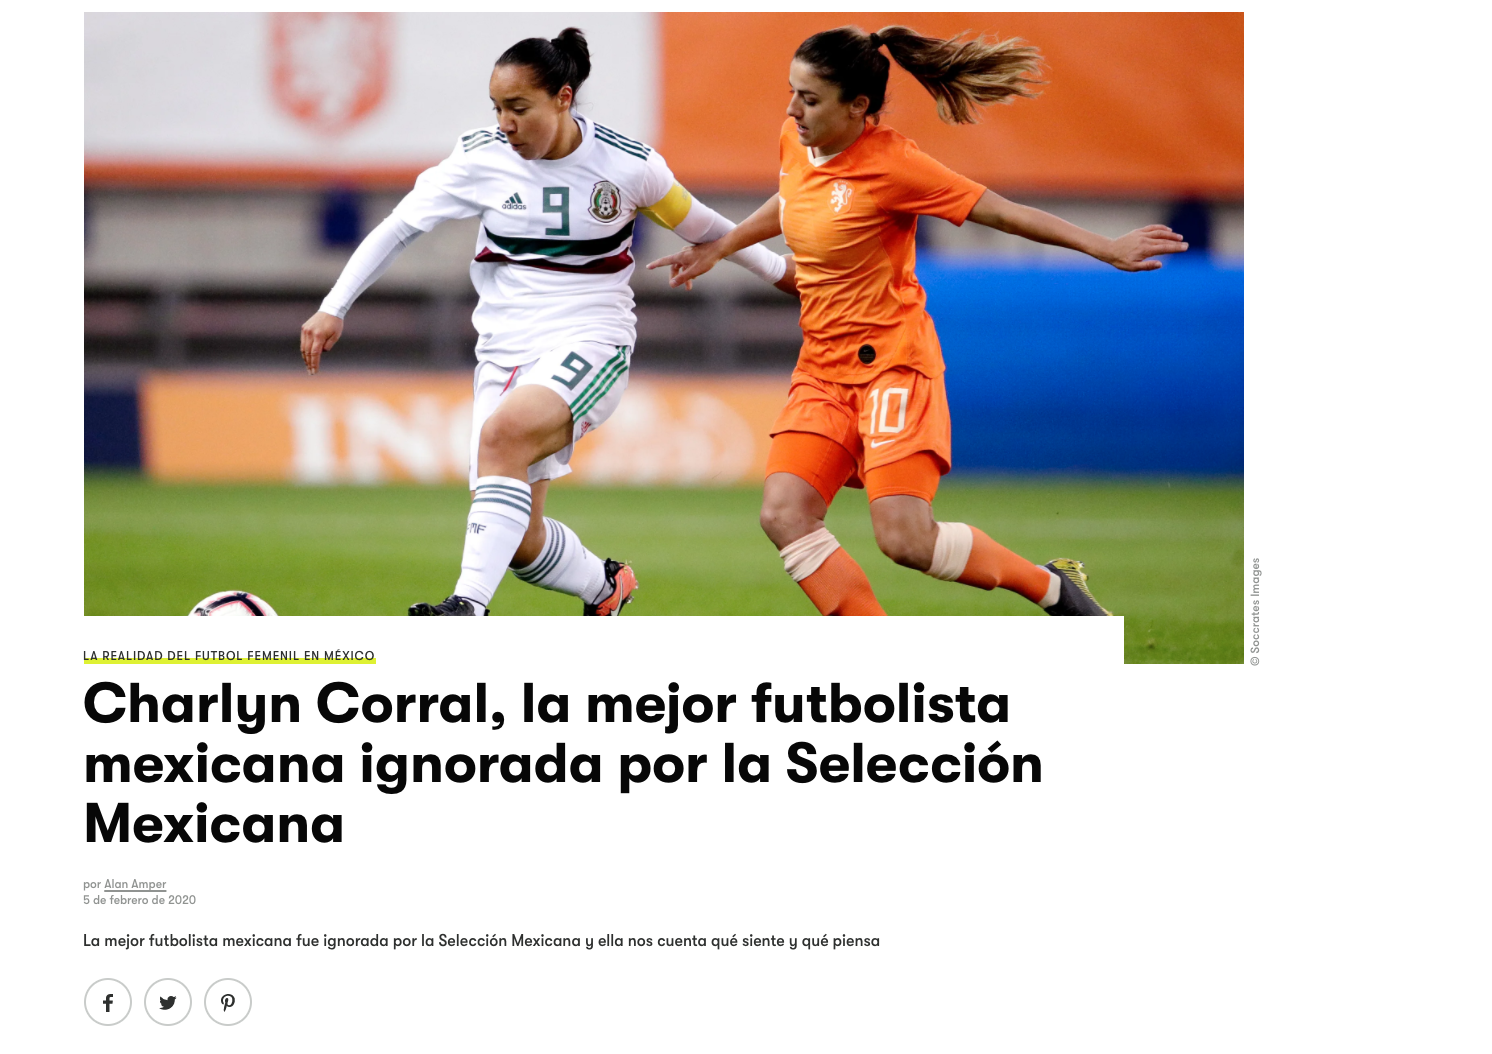 Charlyn Corral, la mejor futbolista mexicana ignorada por la Selección Mexicana